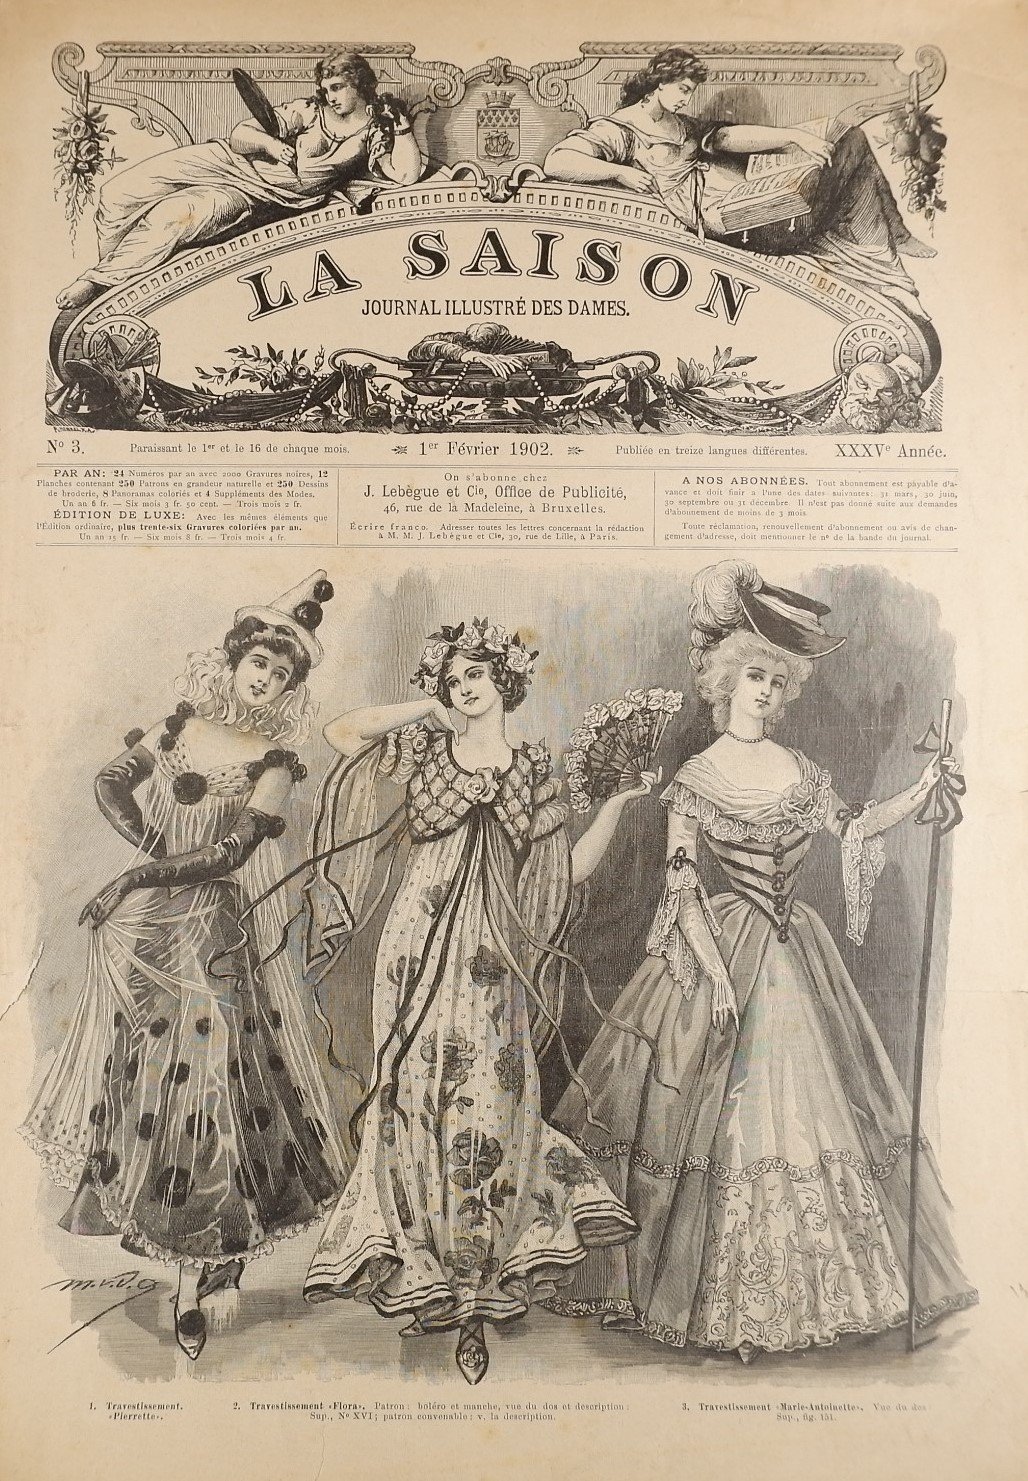 Sammlung: La Saison, Journal illustre`des dames (1902) (Volkskunde- und Freilichtmuseum Roscheider Hof RR-F)